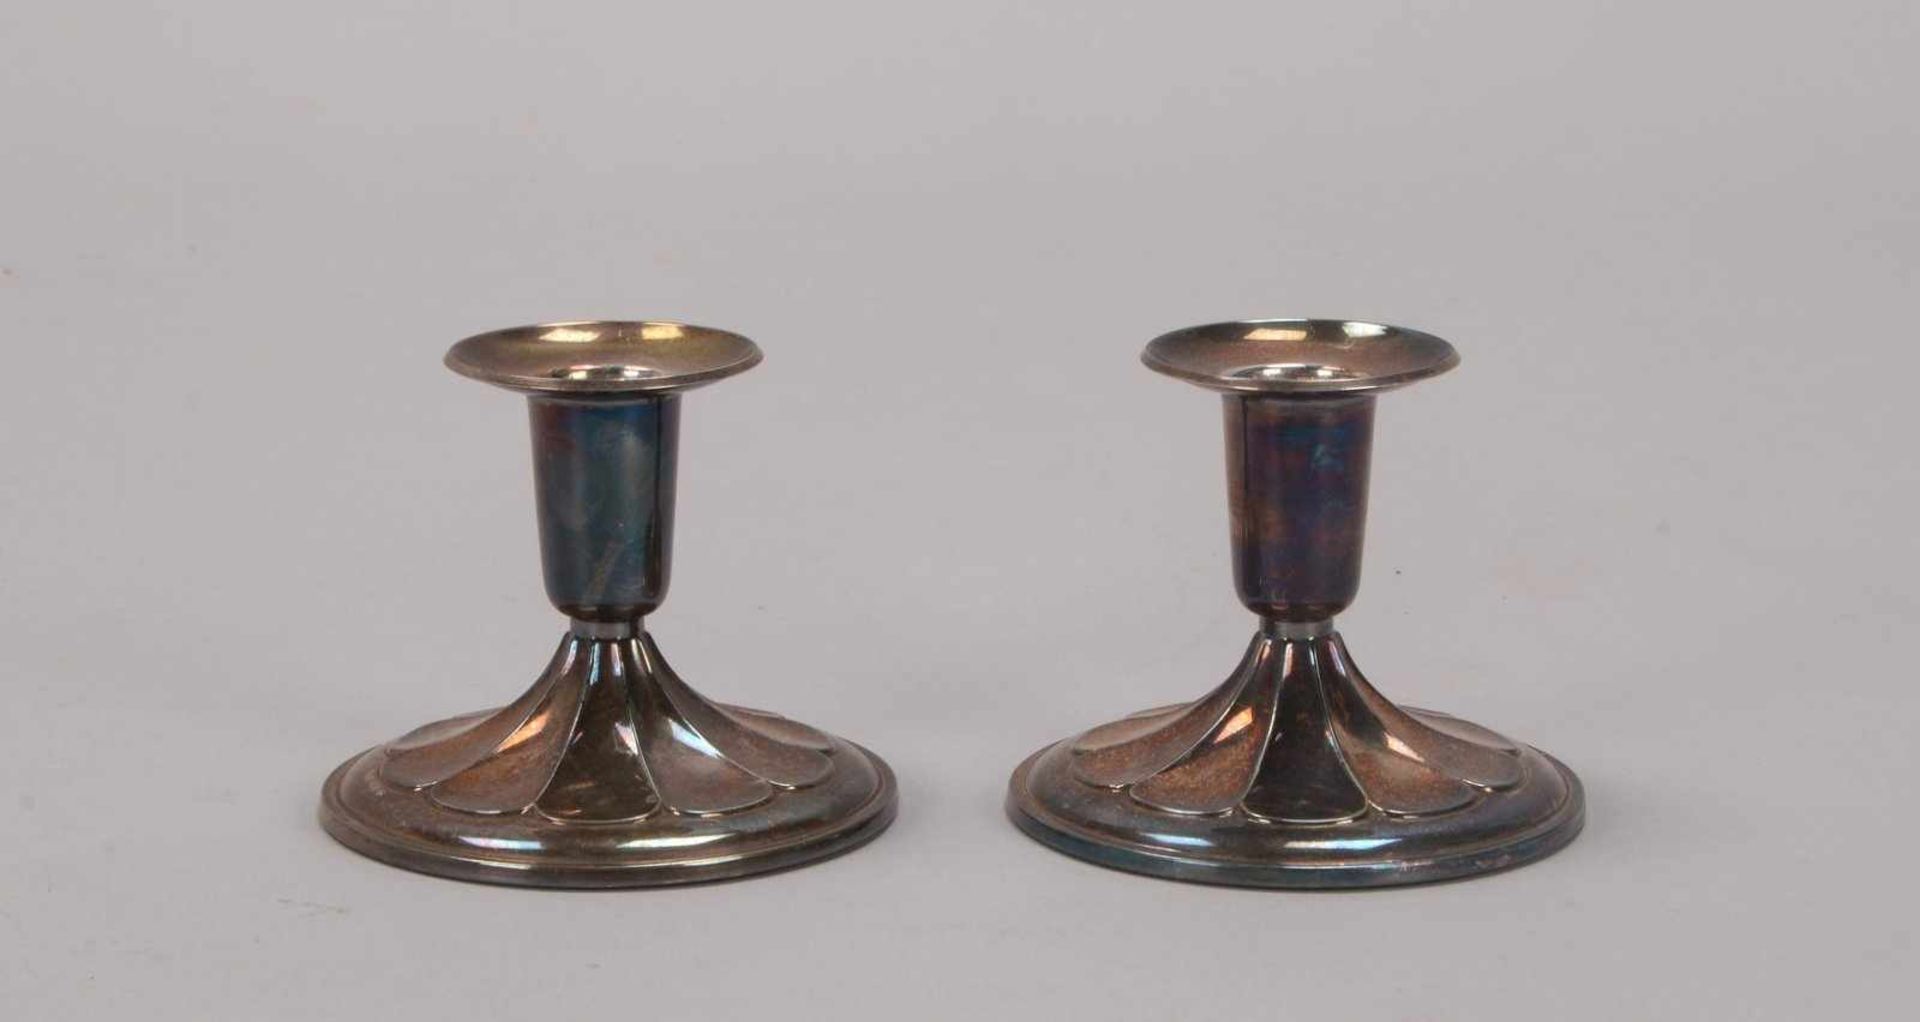 Paar Tisch-Kerzenleuchter (Schweden), 830 Silber, mehrfach punziert; Höhe 7 cm, Gesamtgewicht 218 g